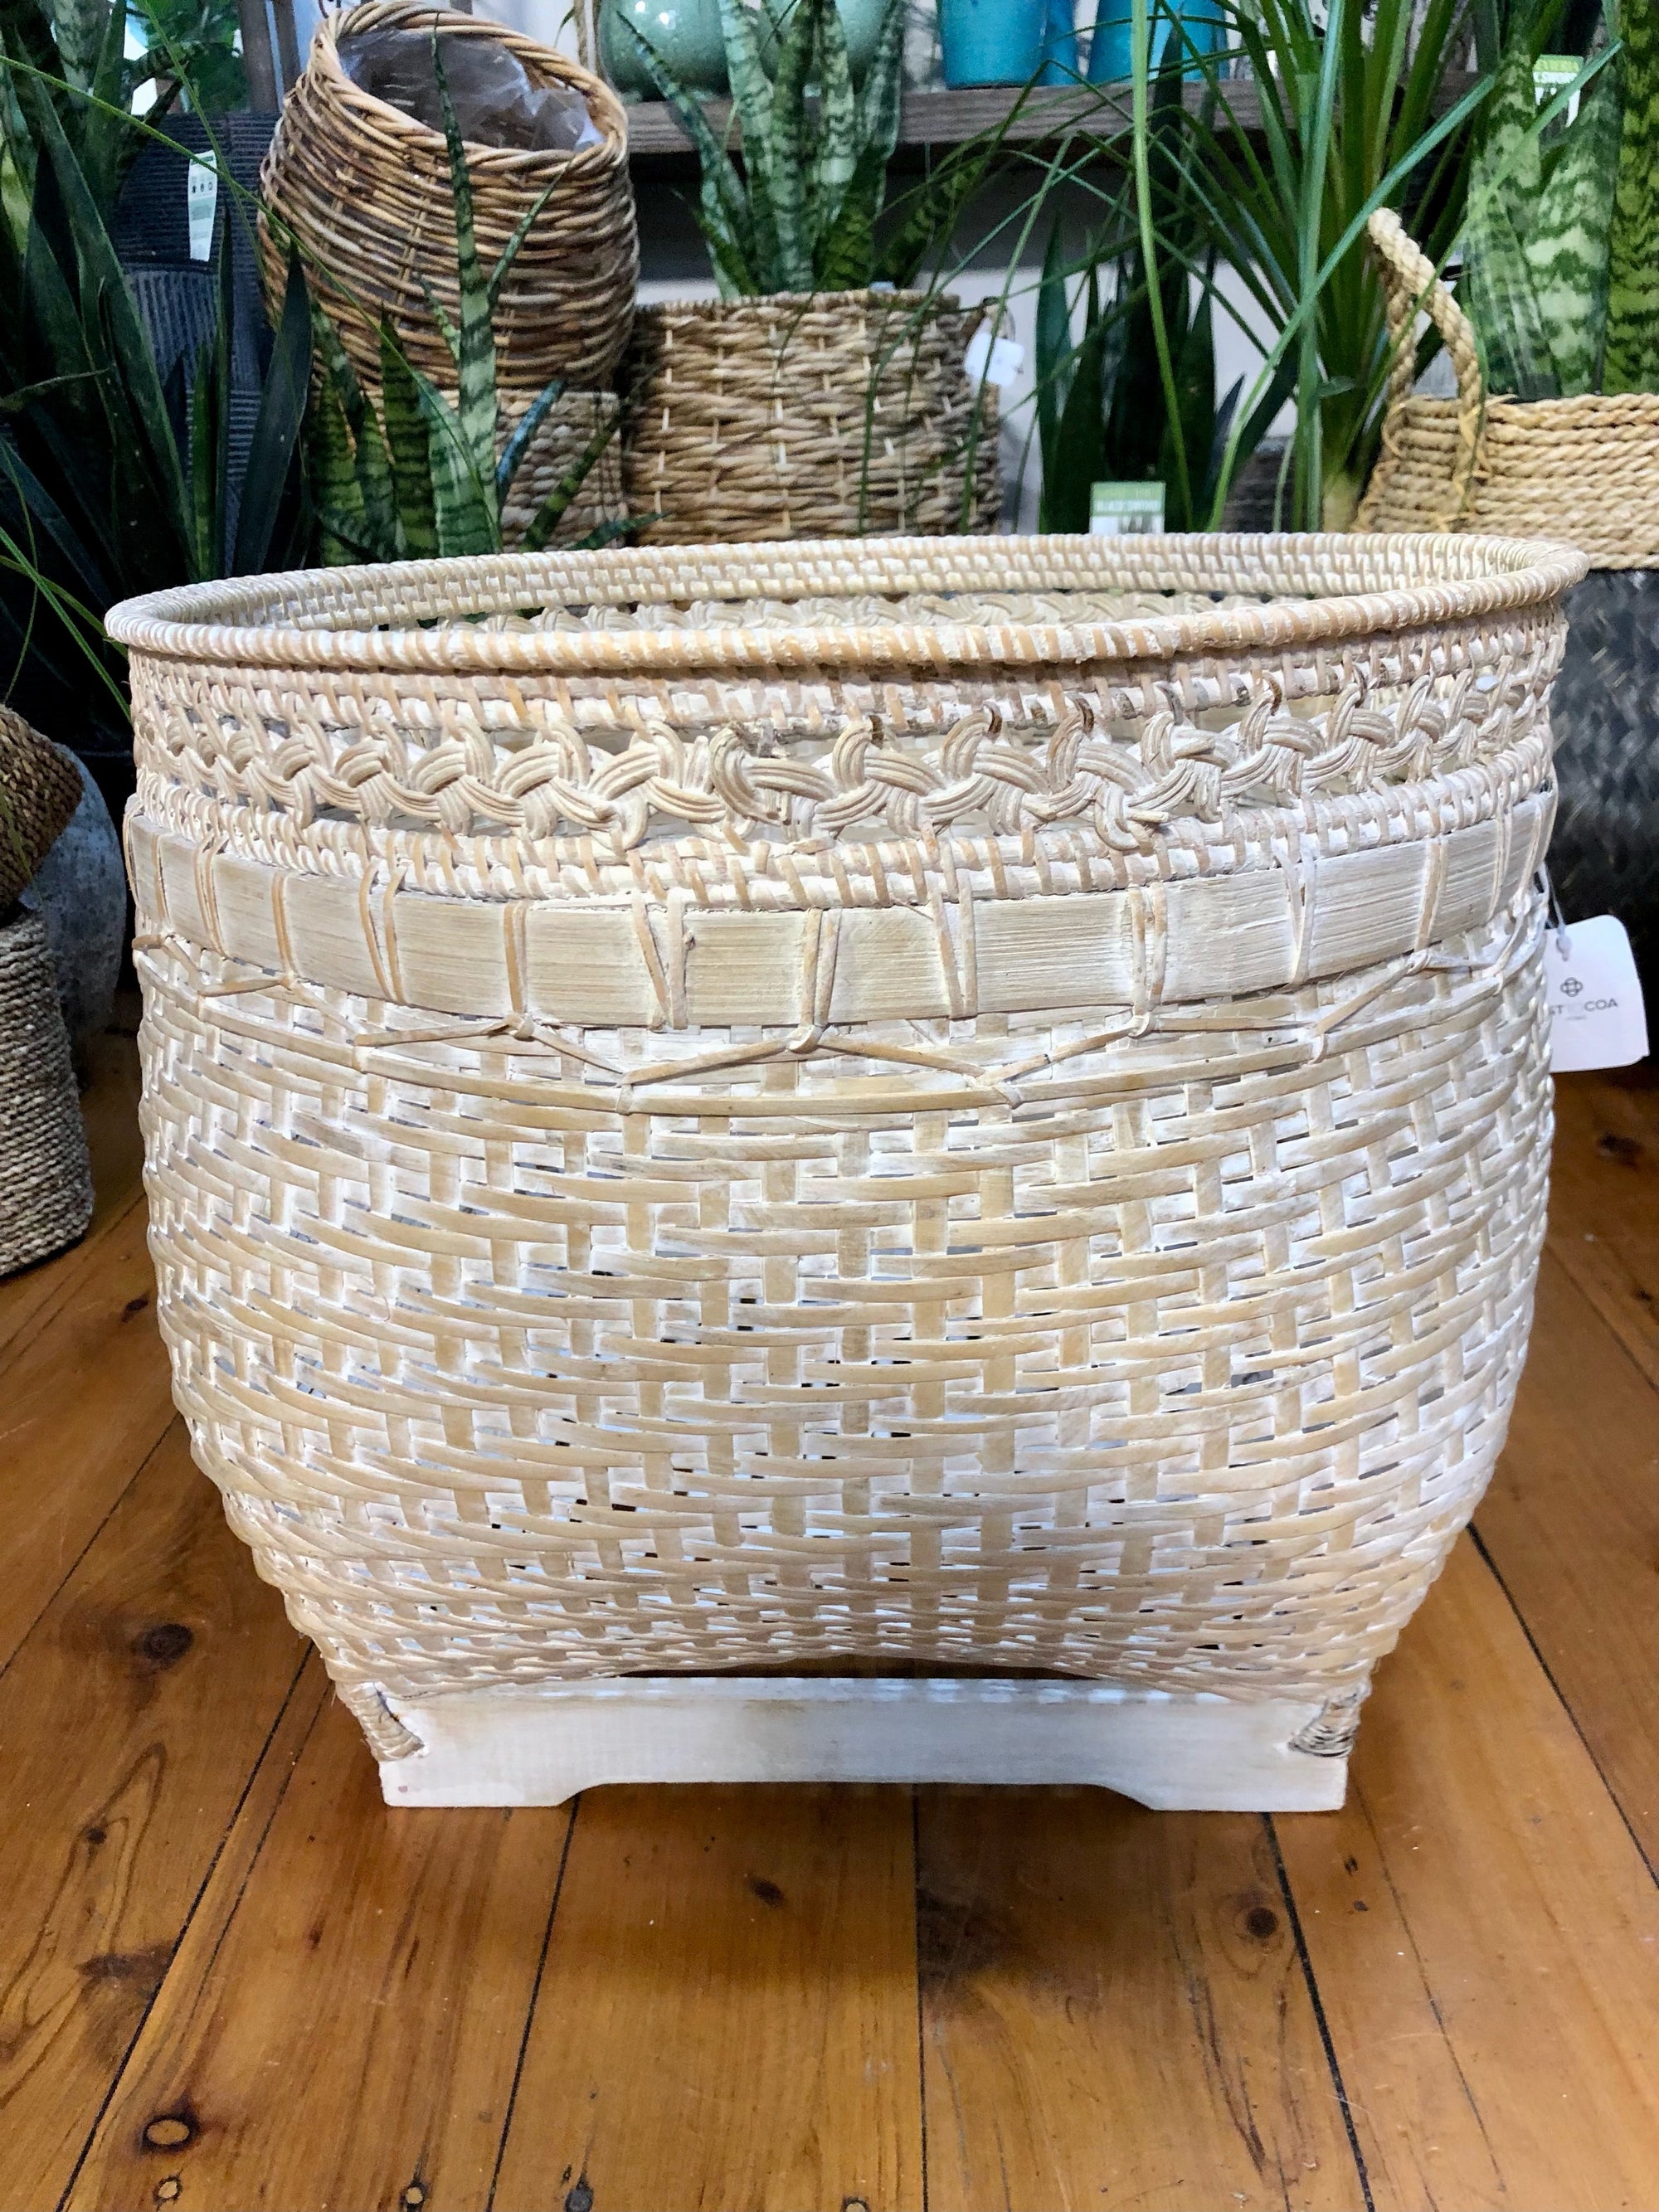 Olan bamboo woven baskets